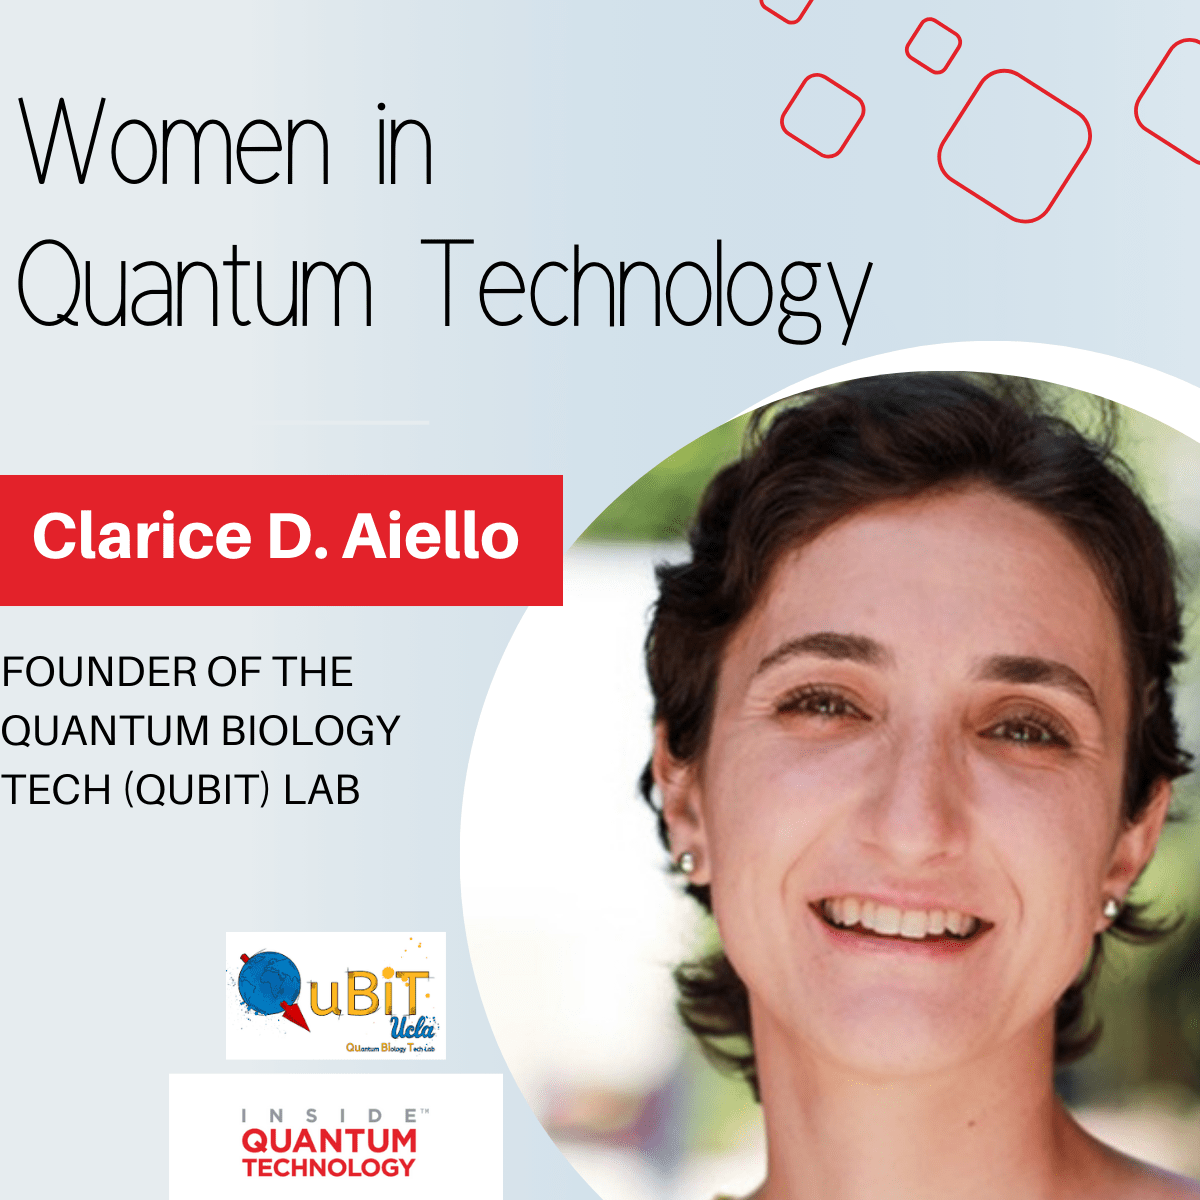 สตรีแห่งเทคโนโลยีควอนตัม: ดร. Clarice D. Aiello จากห้องปฏิบัติการ Quantum Biology Tech (QuBiT) - Inside Quantum Technology